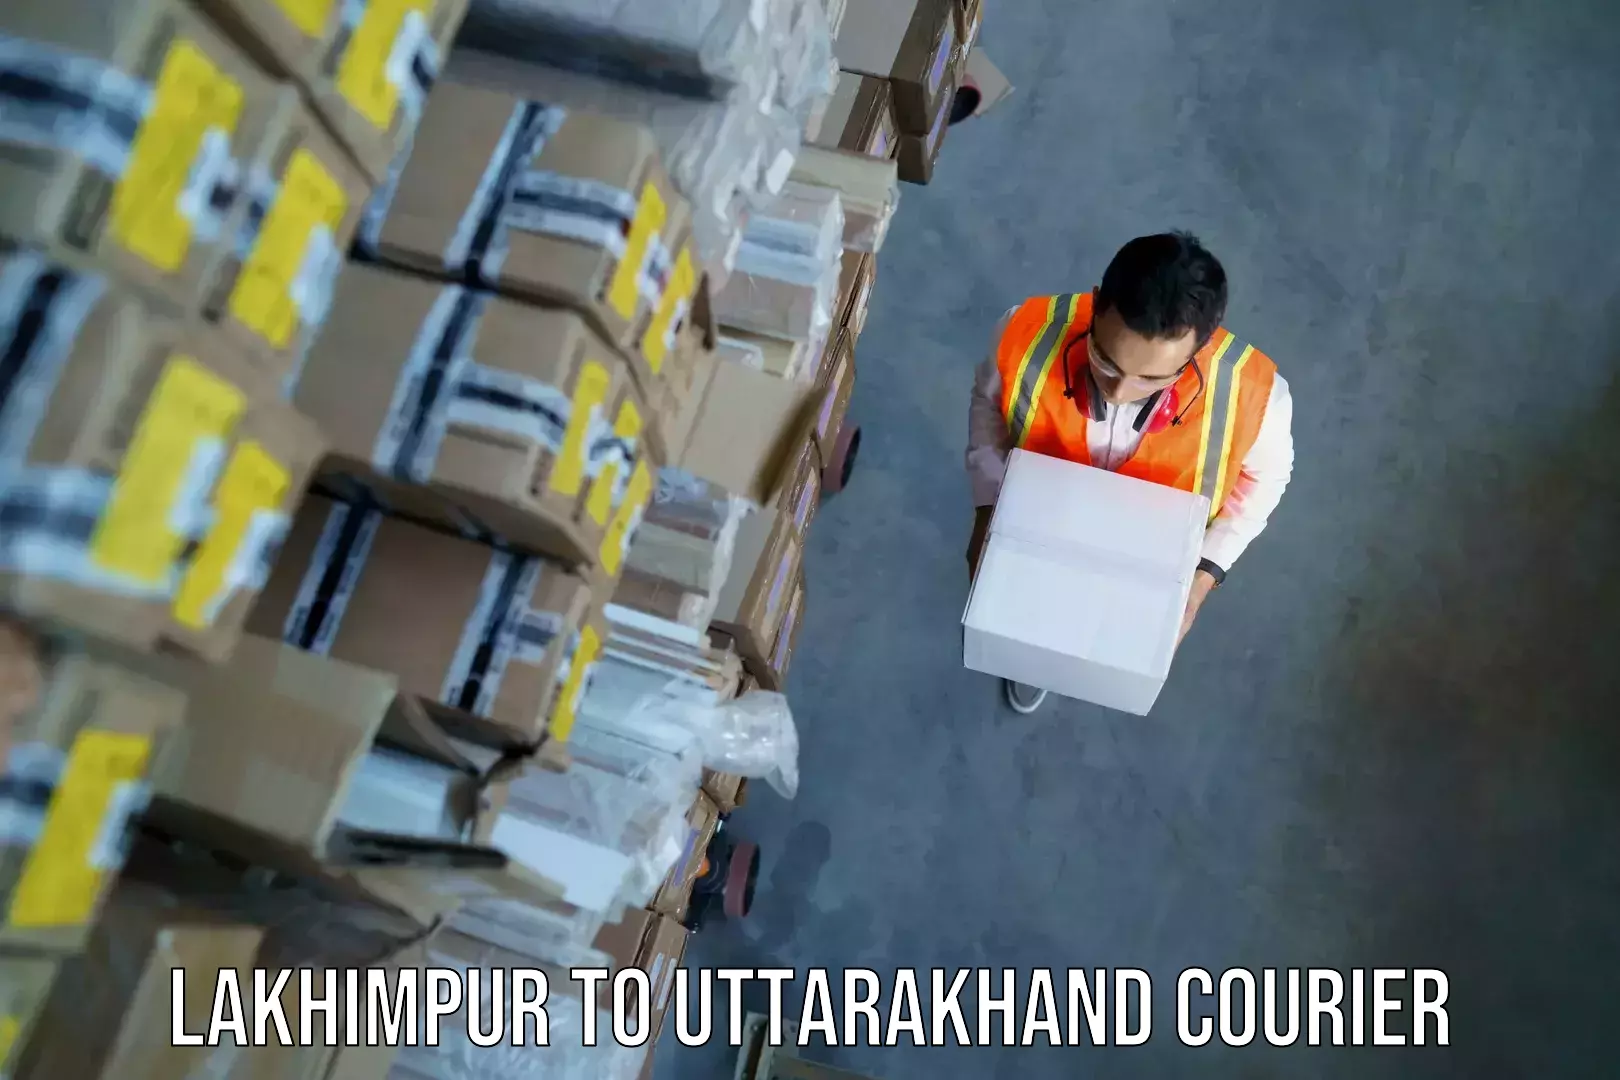 Baggage shipping experts Lakhimpur to Herbertpur